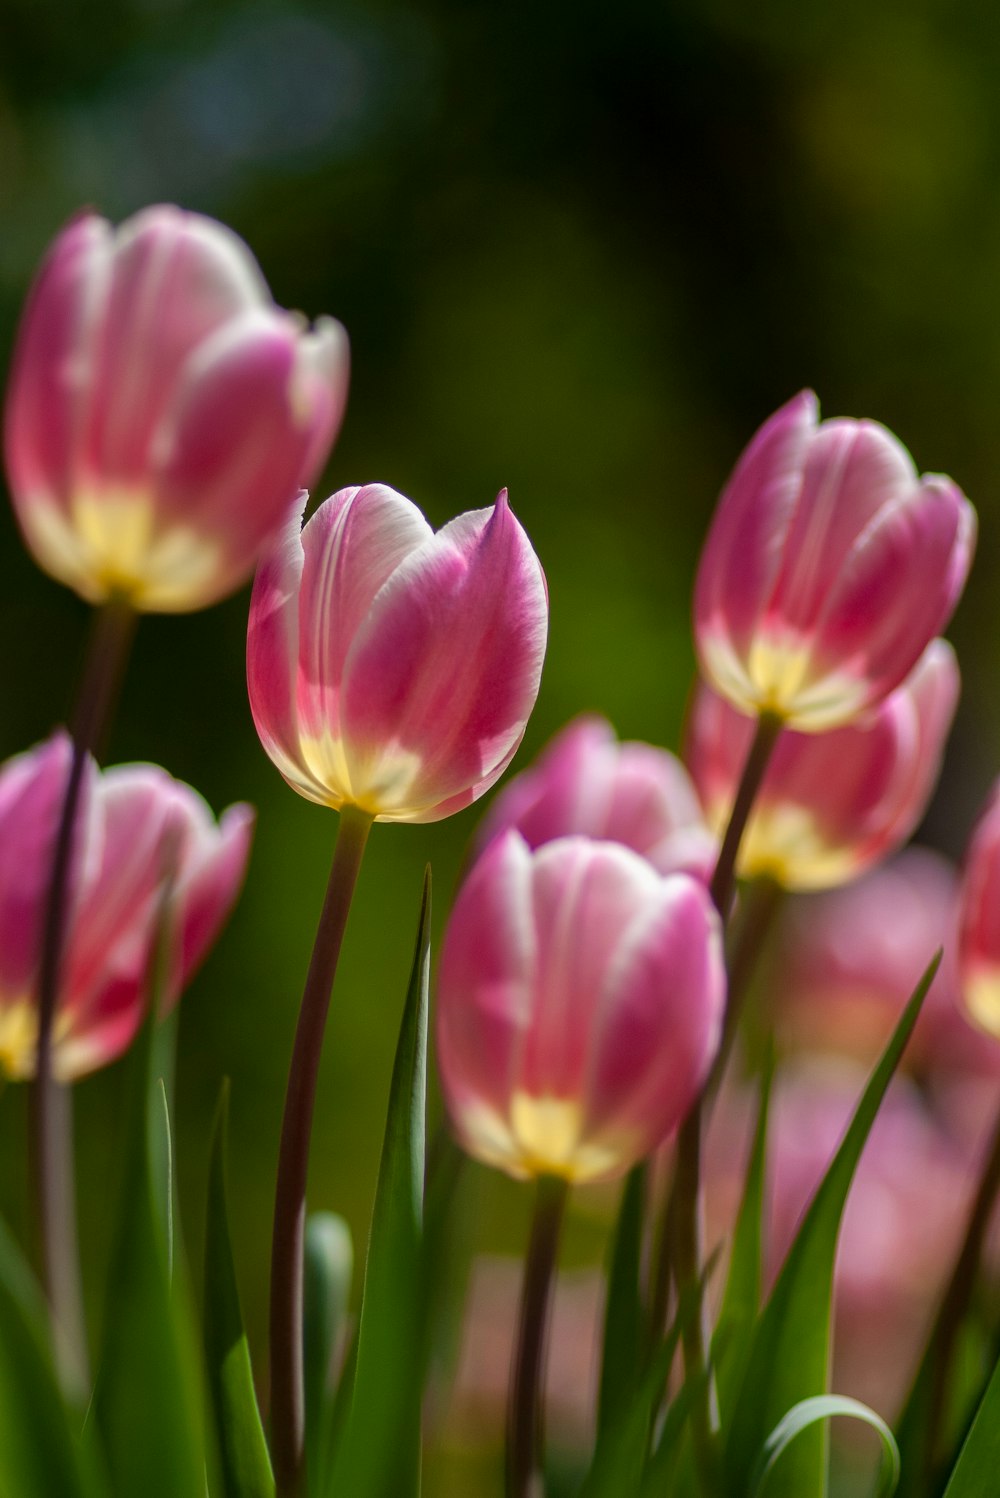 Fotografía de enfoque superficial de tulipanes morados